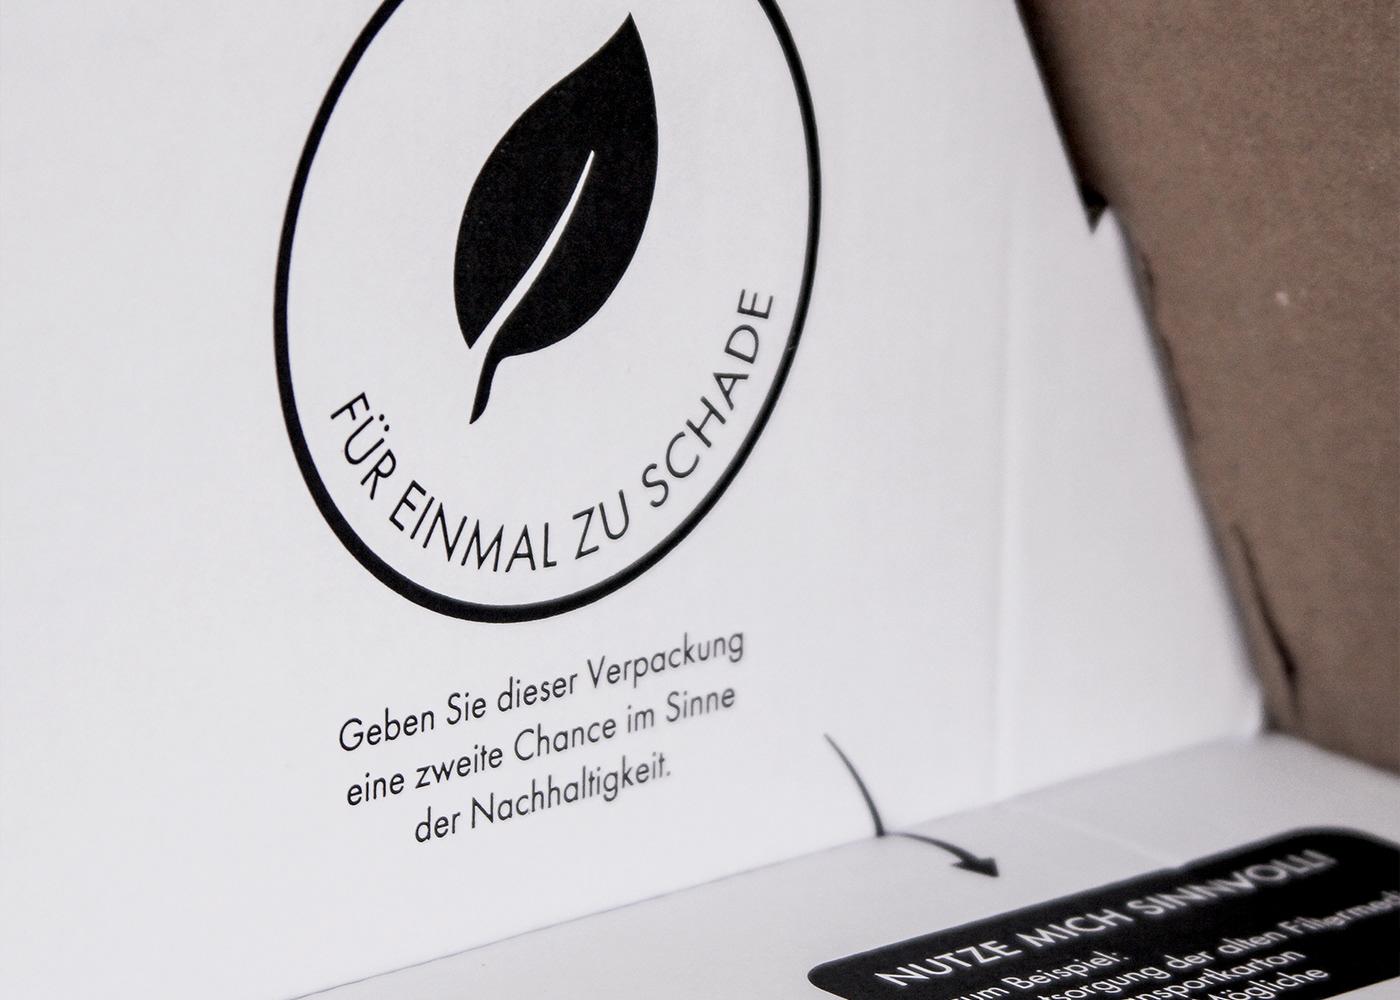 creation design josbuero Packaging packaging design paper Sustainable verpackung verpackungsdesign würzburg